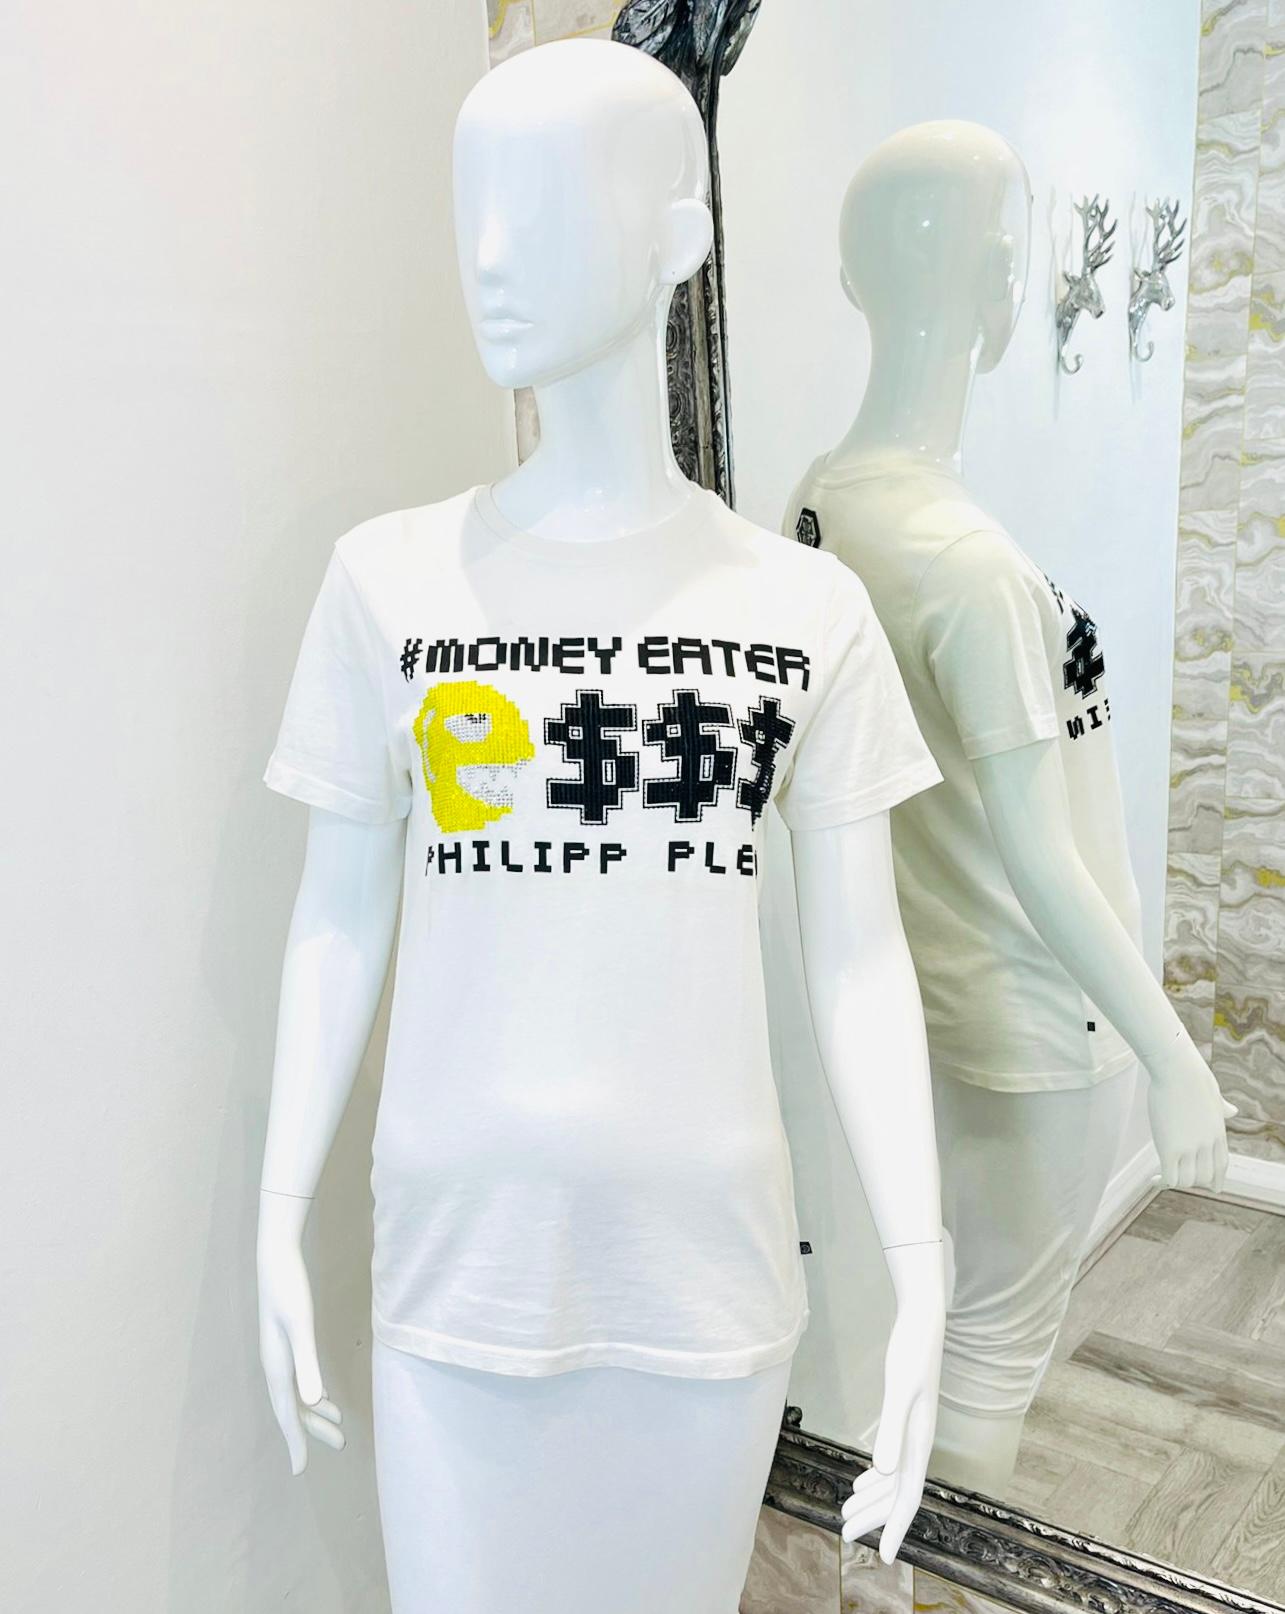 Philipp Plein-T-Shirt aus Baumwolle mit Kristall-Logo

Weißes T-Shirt mit dem mit Kristallen verzierten Logo 